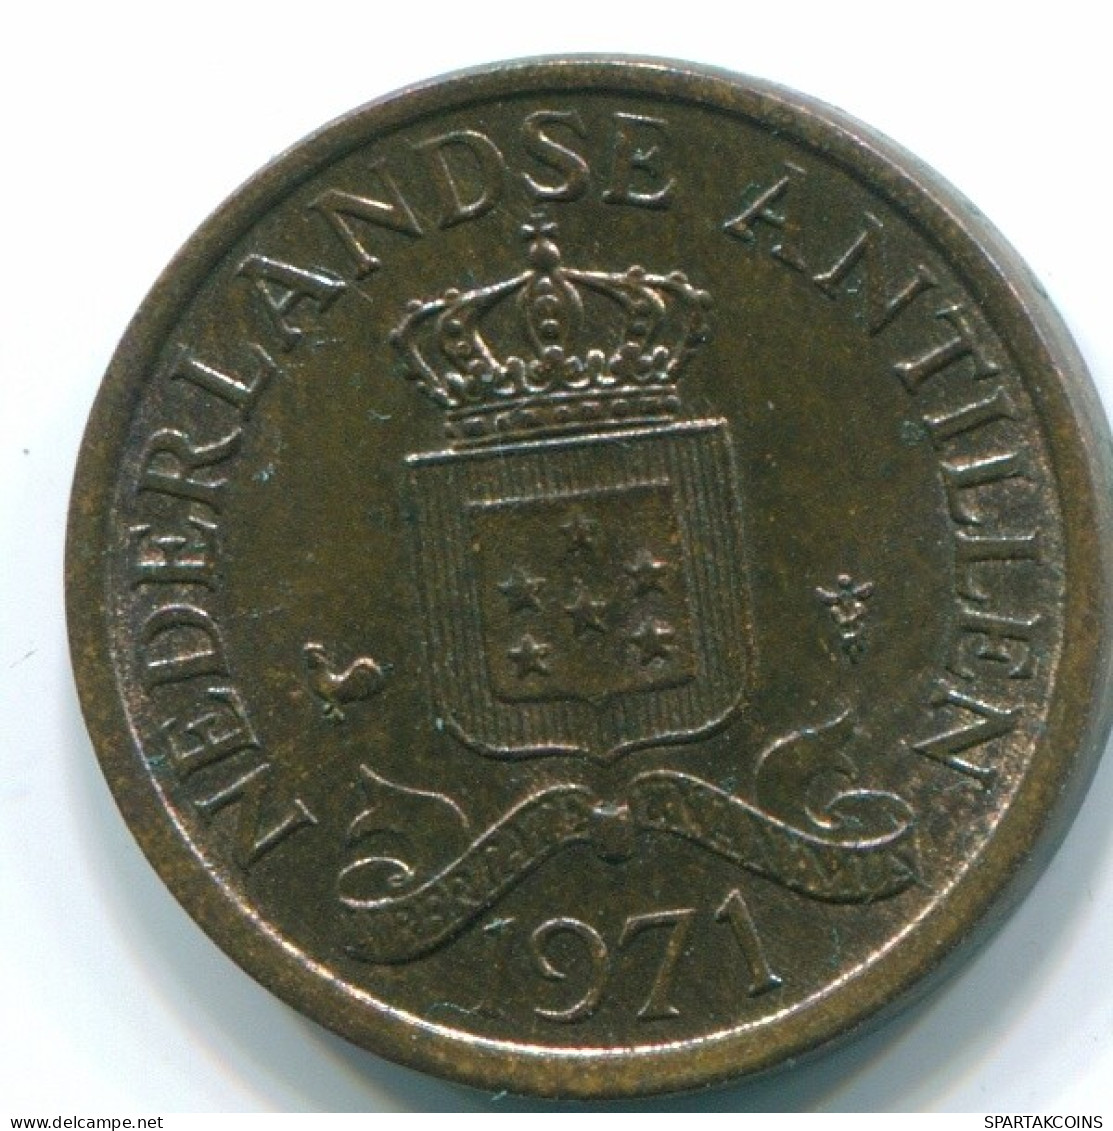 1 CENT 1971 NIEDERLÄNDISCHE ANTILLEN Bronze Koloniale Münze #S10615.D.A - Nederlandse Antillen